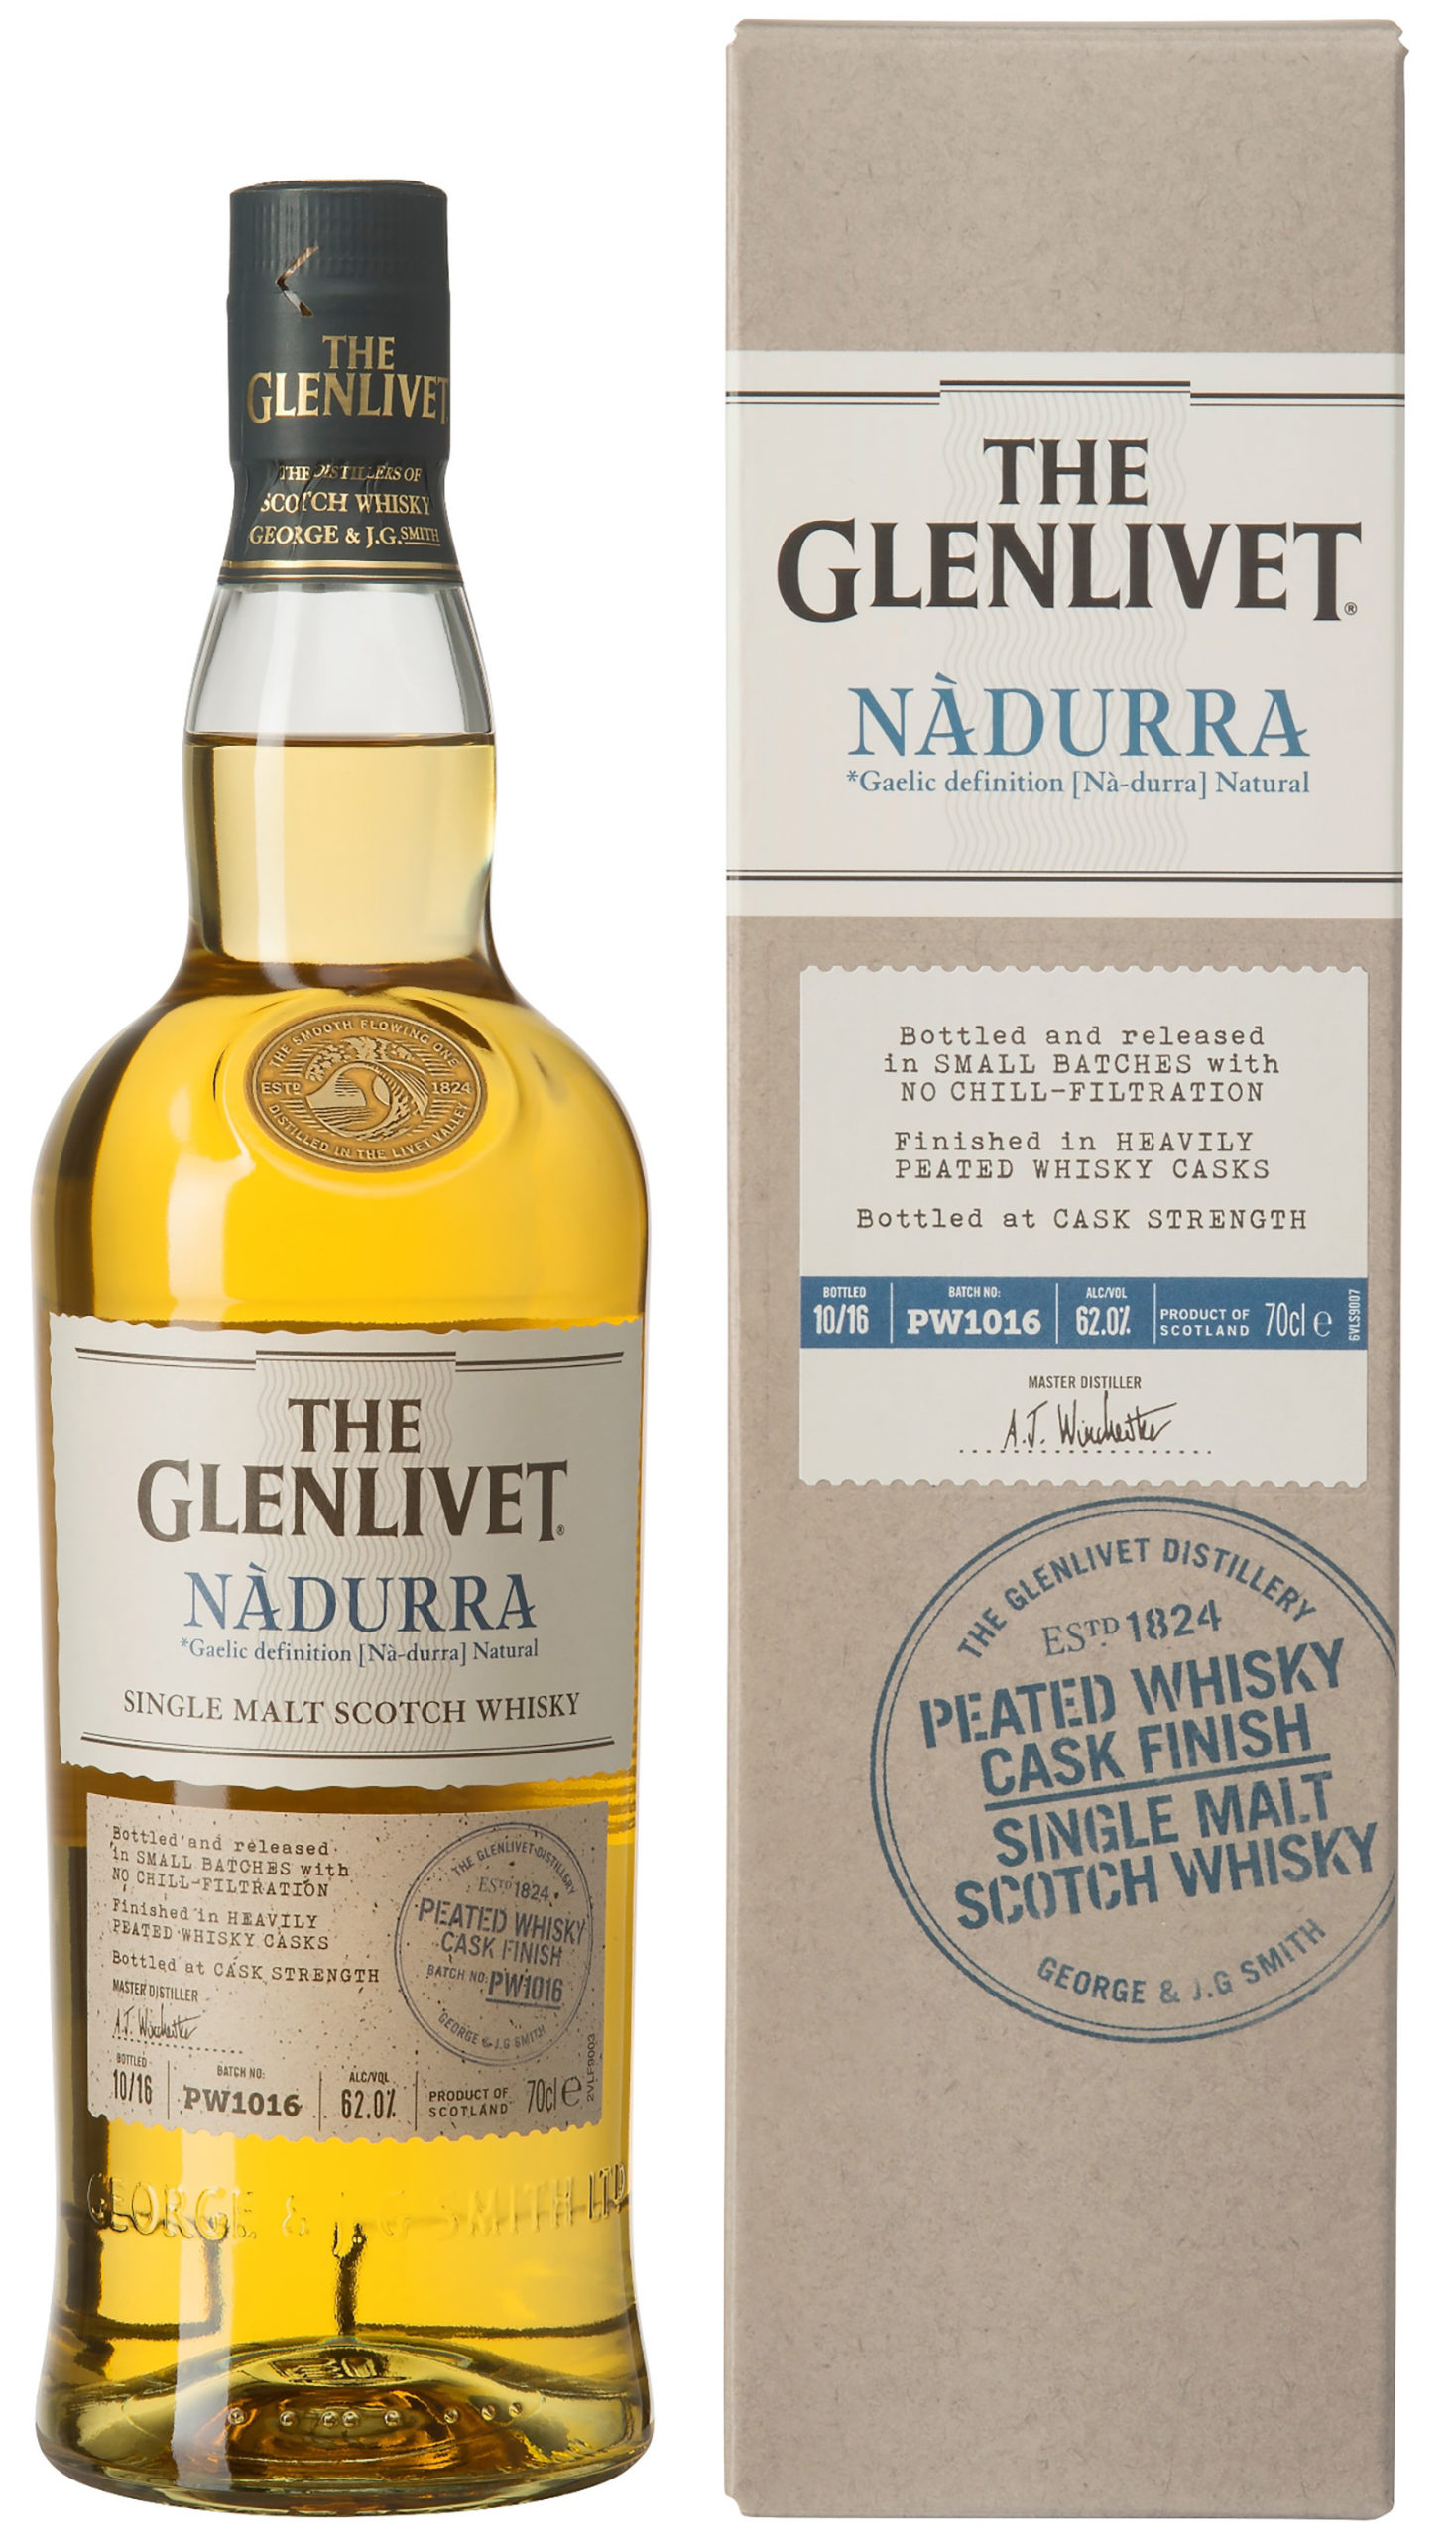 The Glenlivet Nàdurra Peated Whisky Cask Finish Single Malt